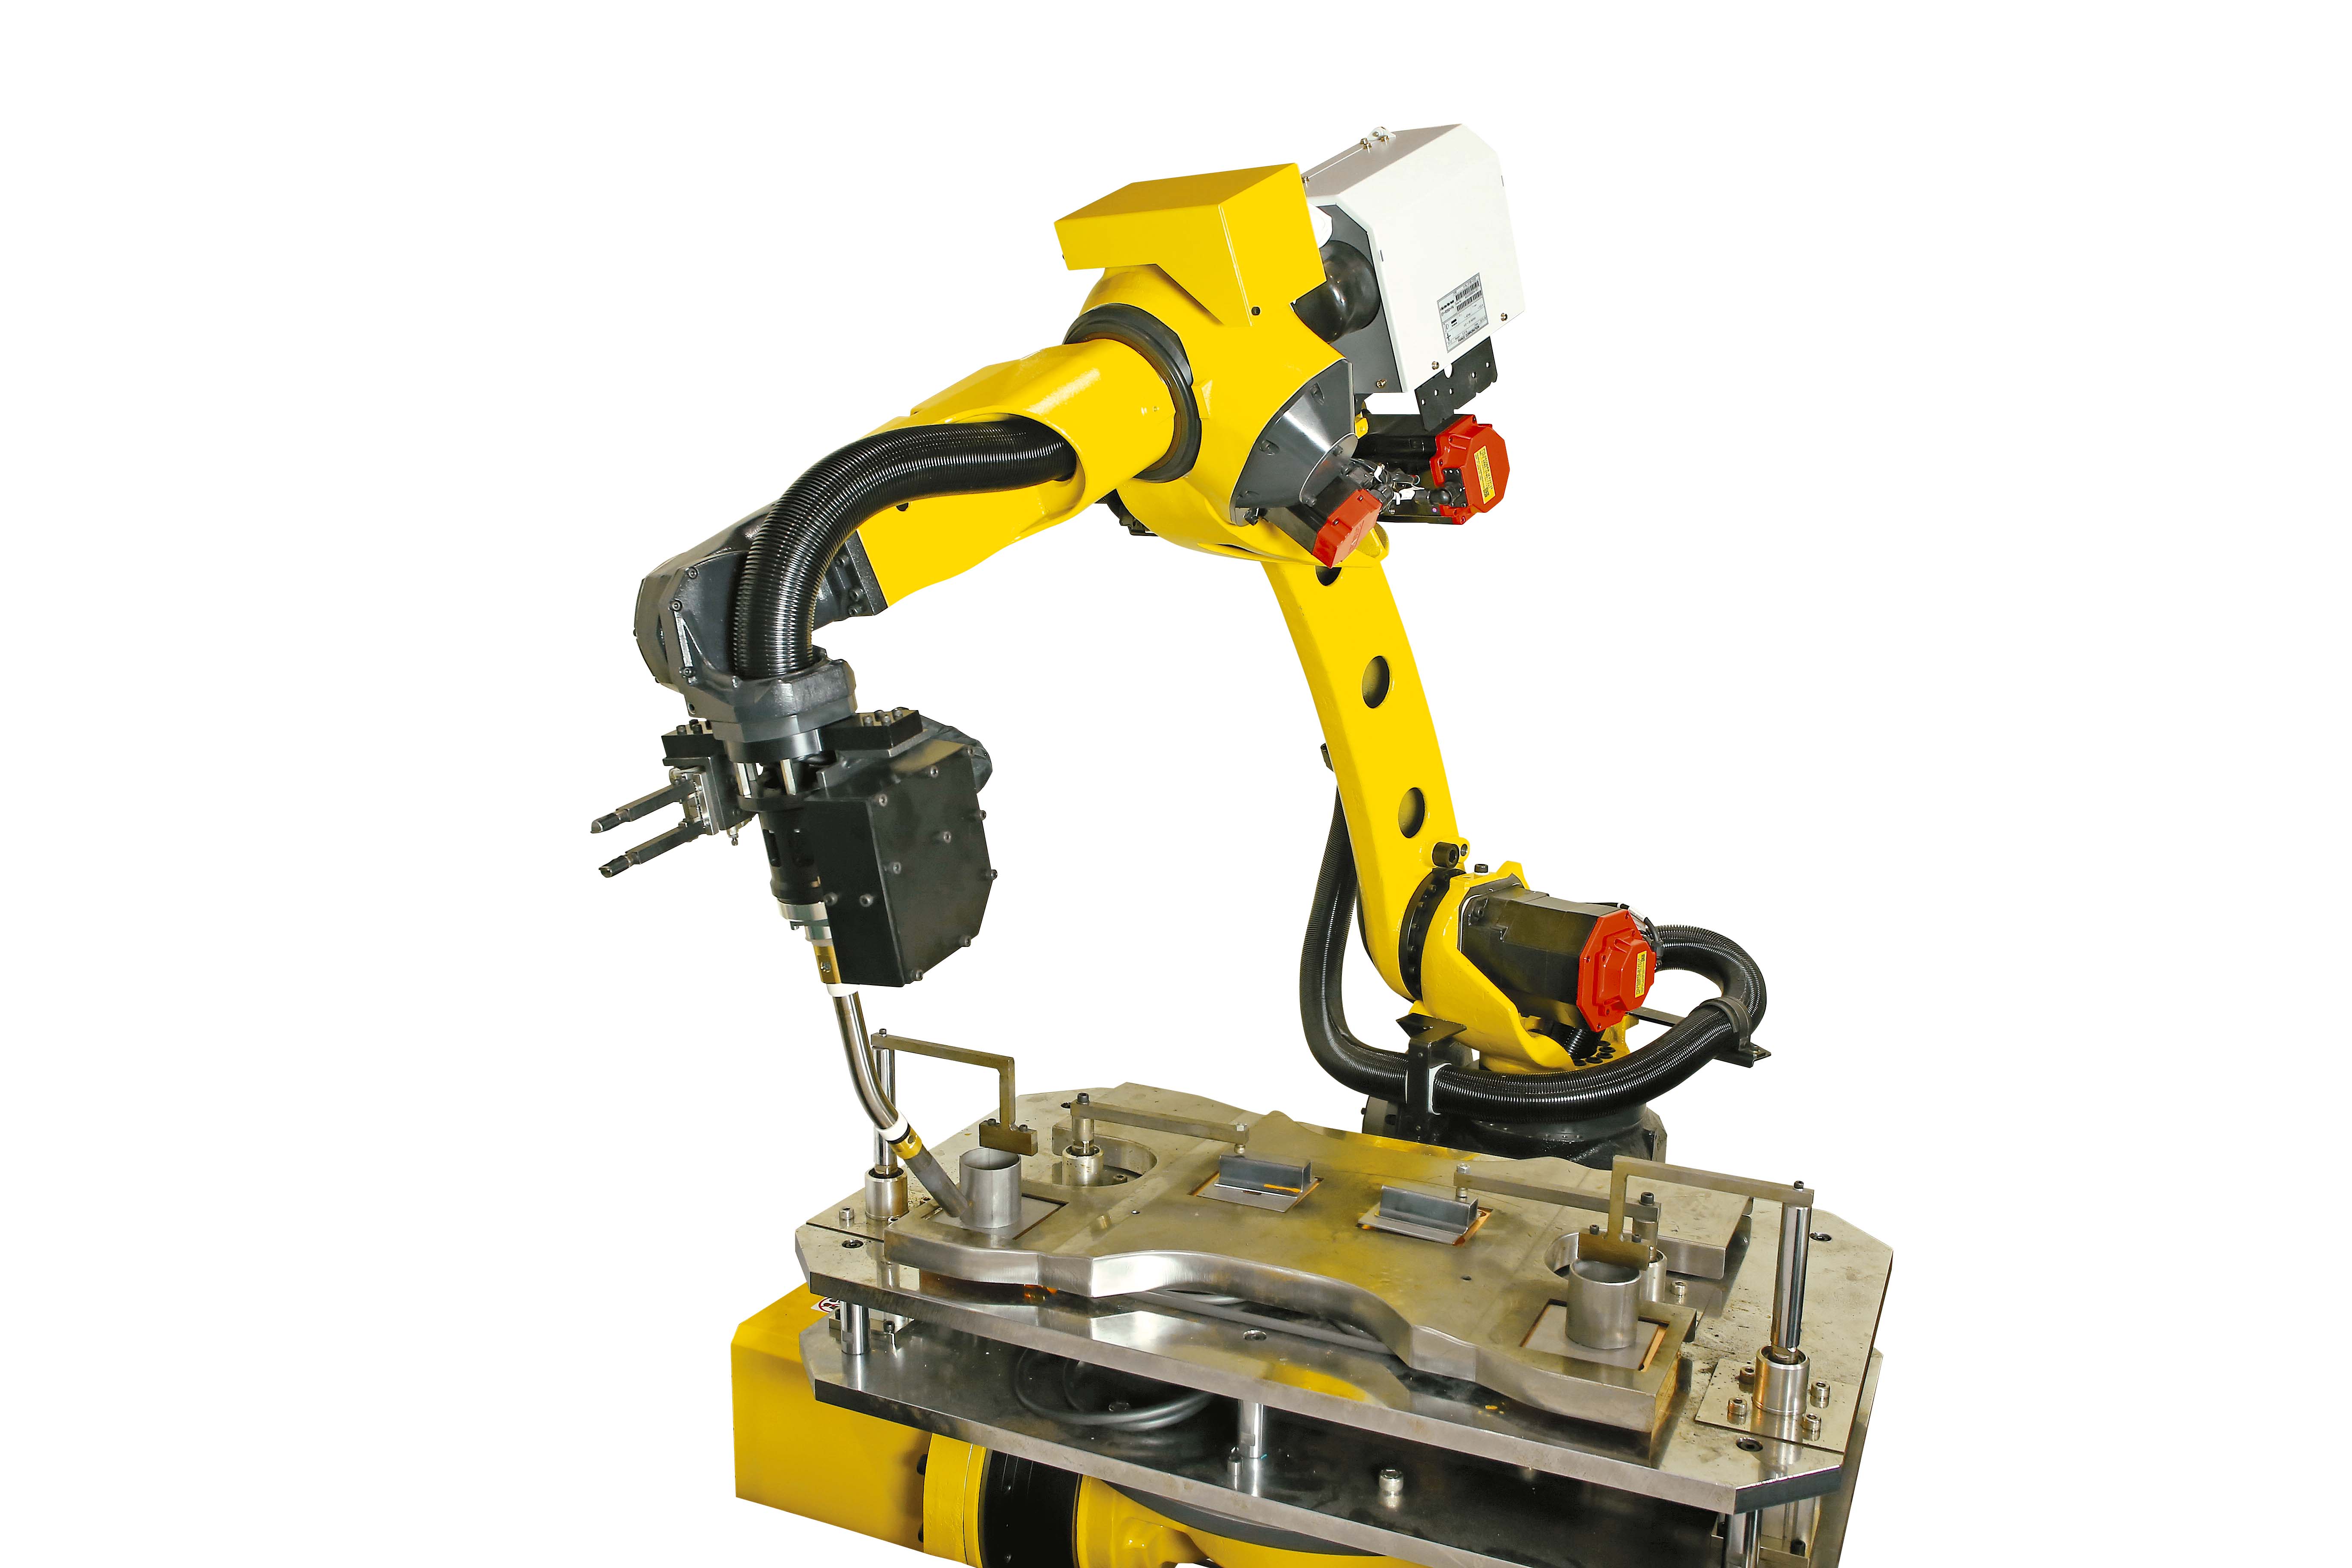 FANUC arc welding robot